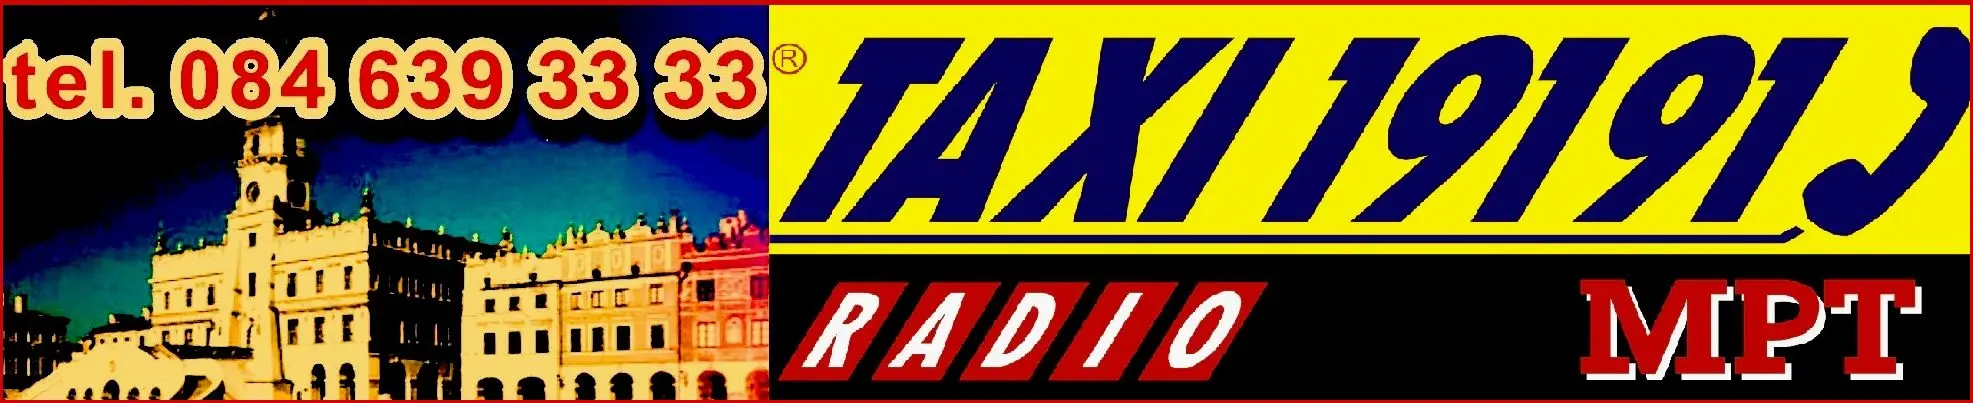 radio taxi zamość zamość - Ile kosztuje taksówka Zamość